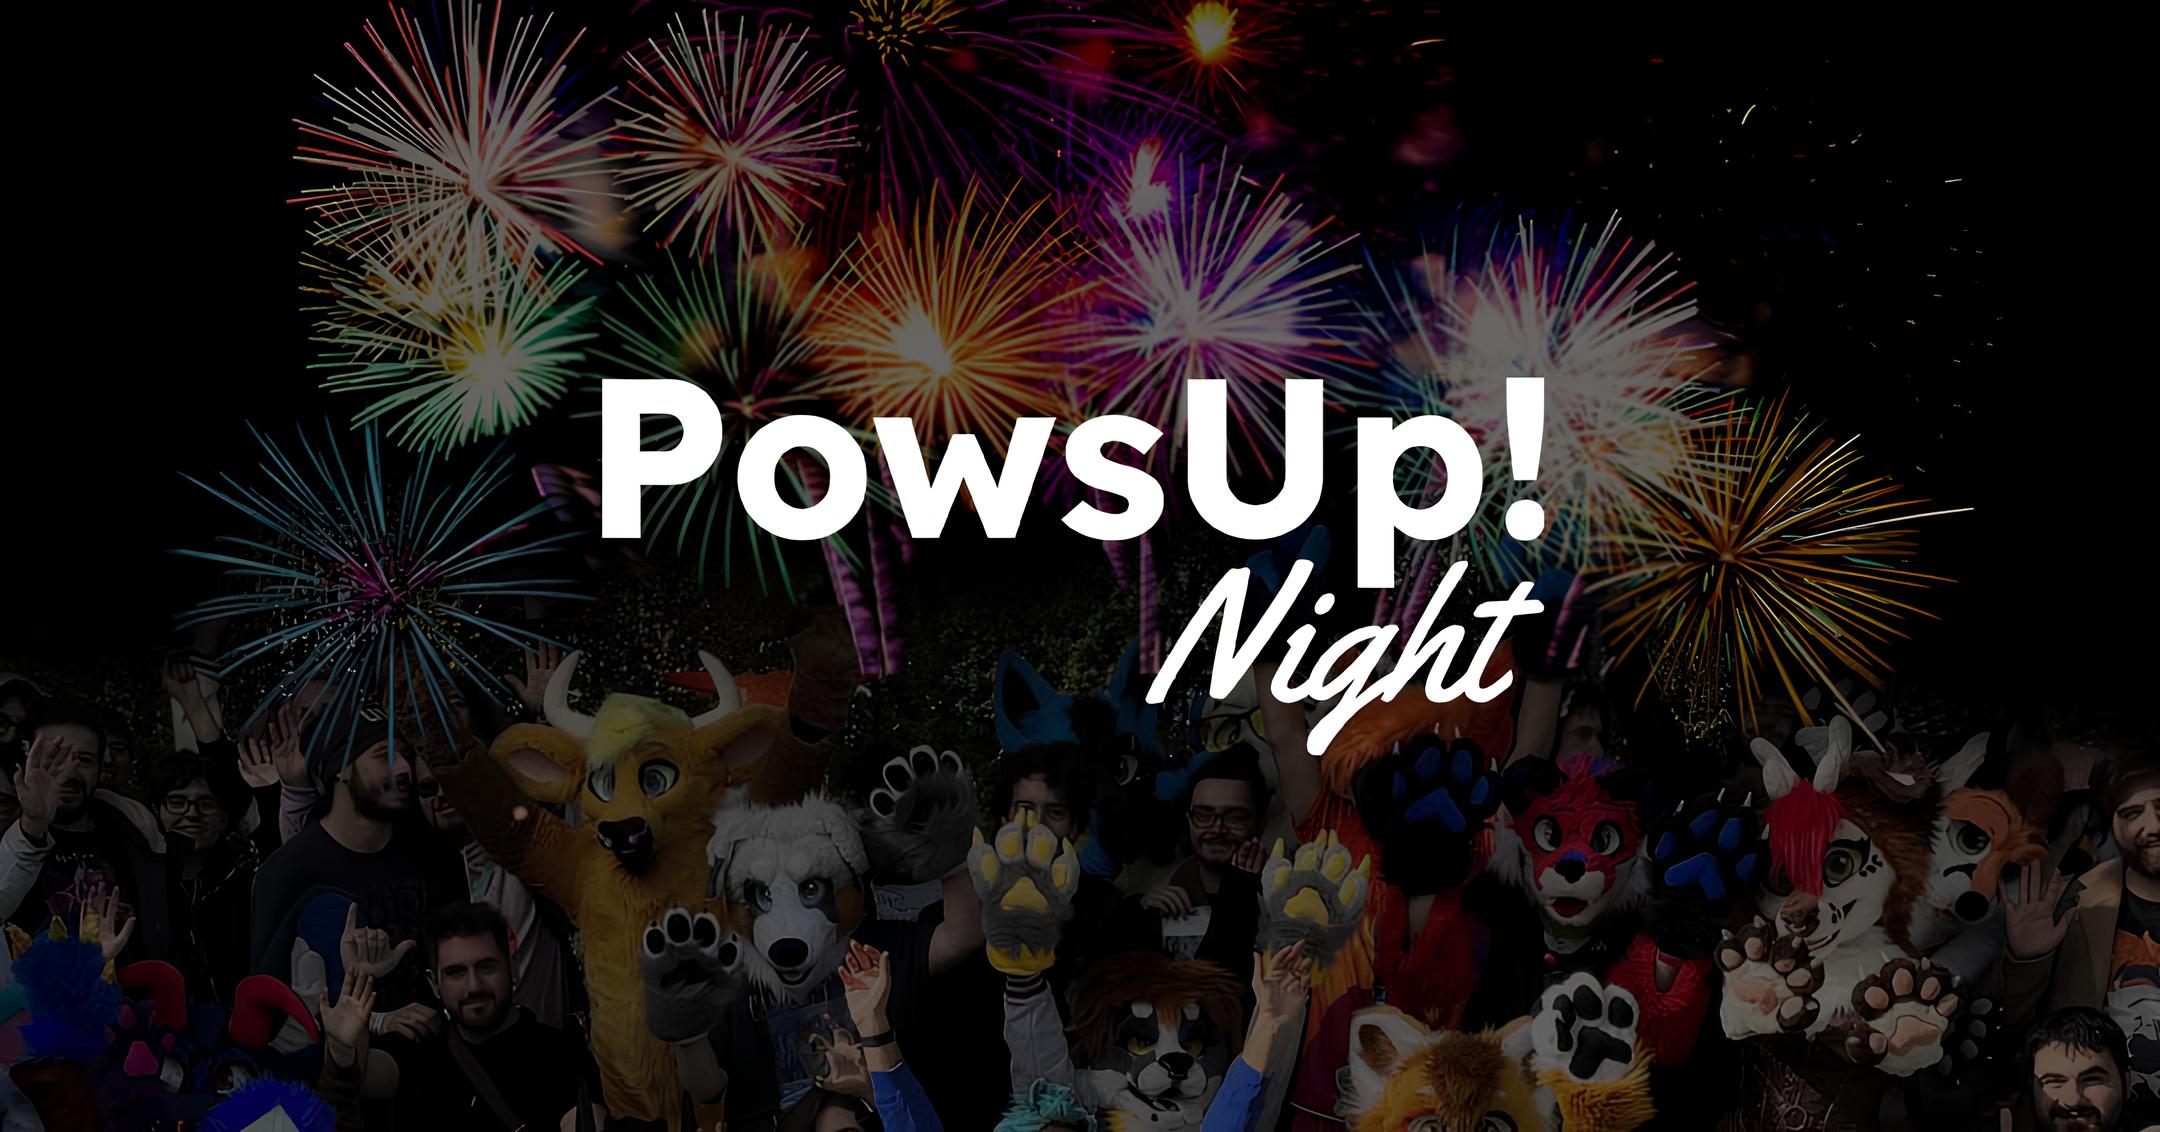 Night - PowsUp!